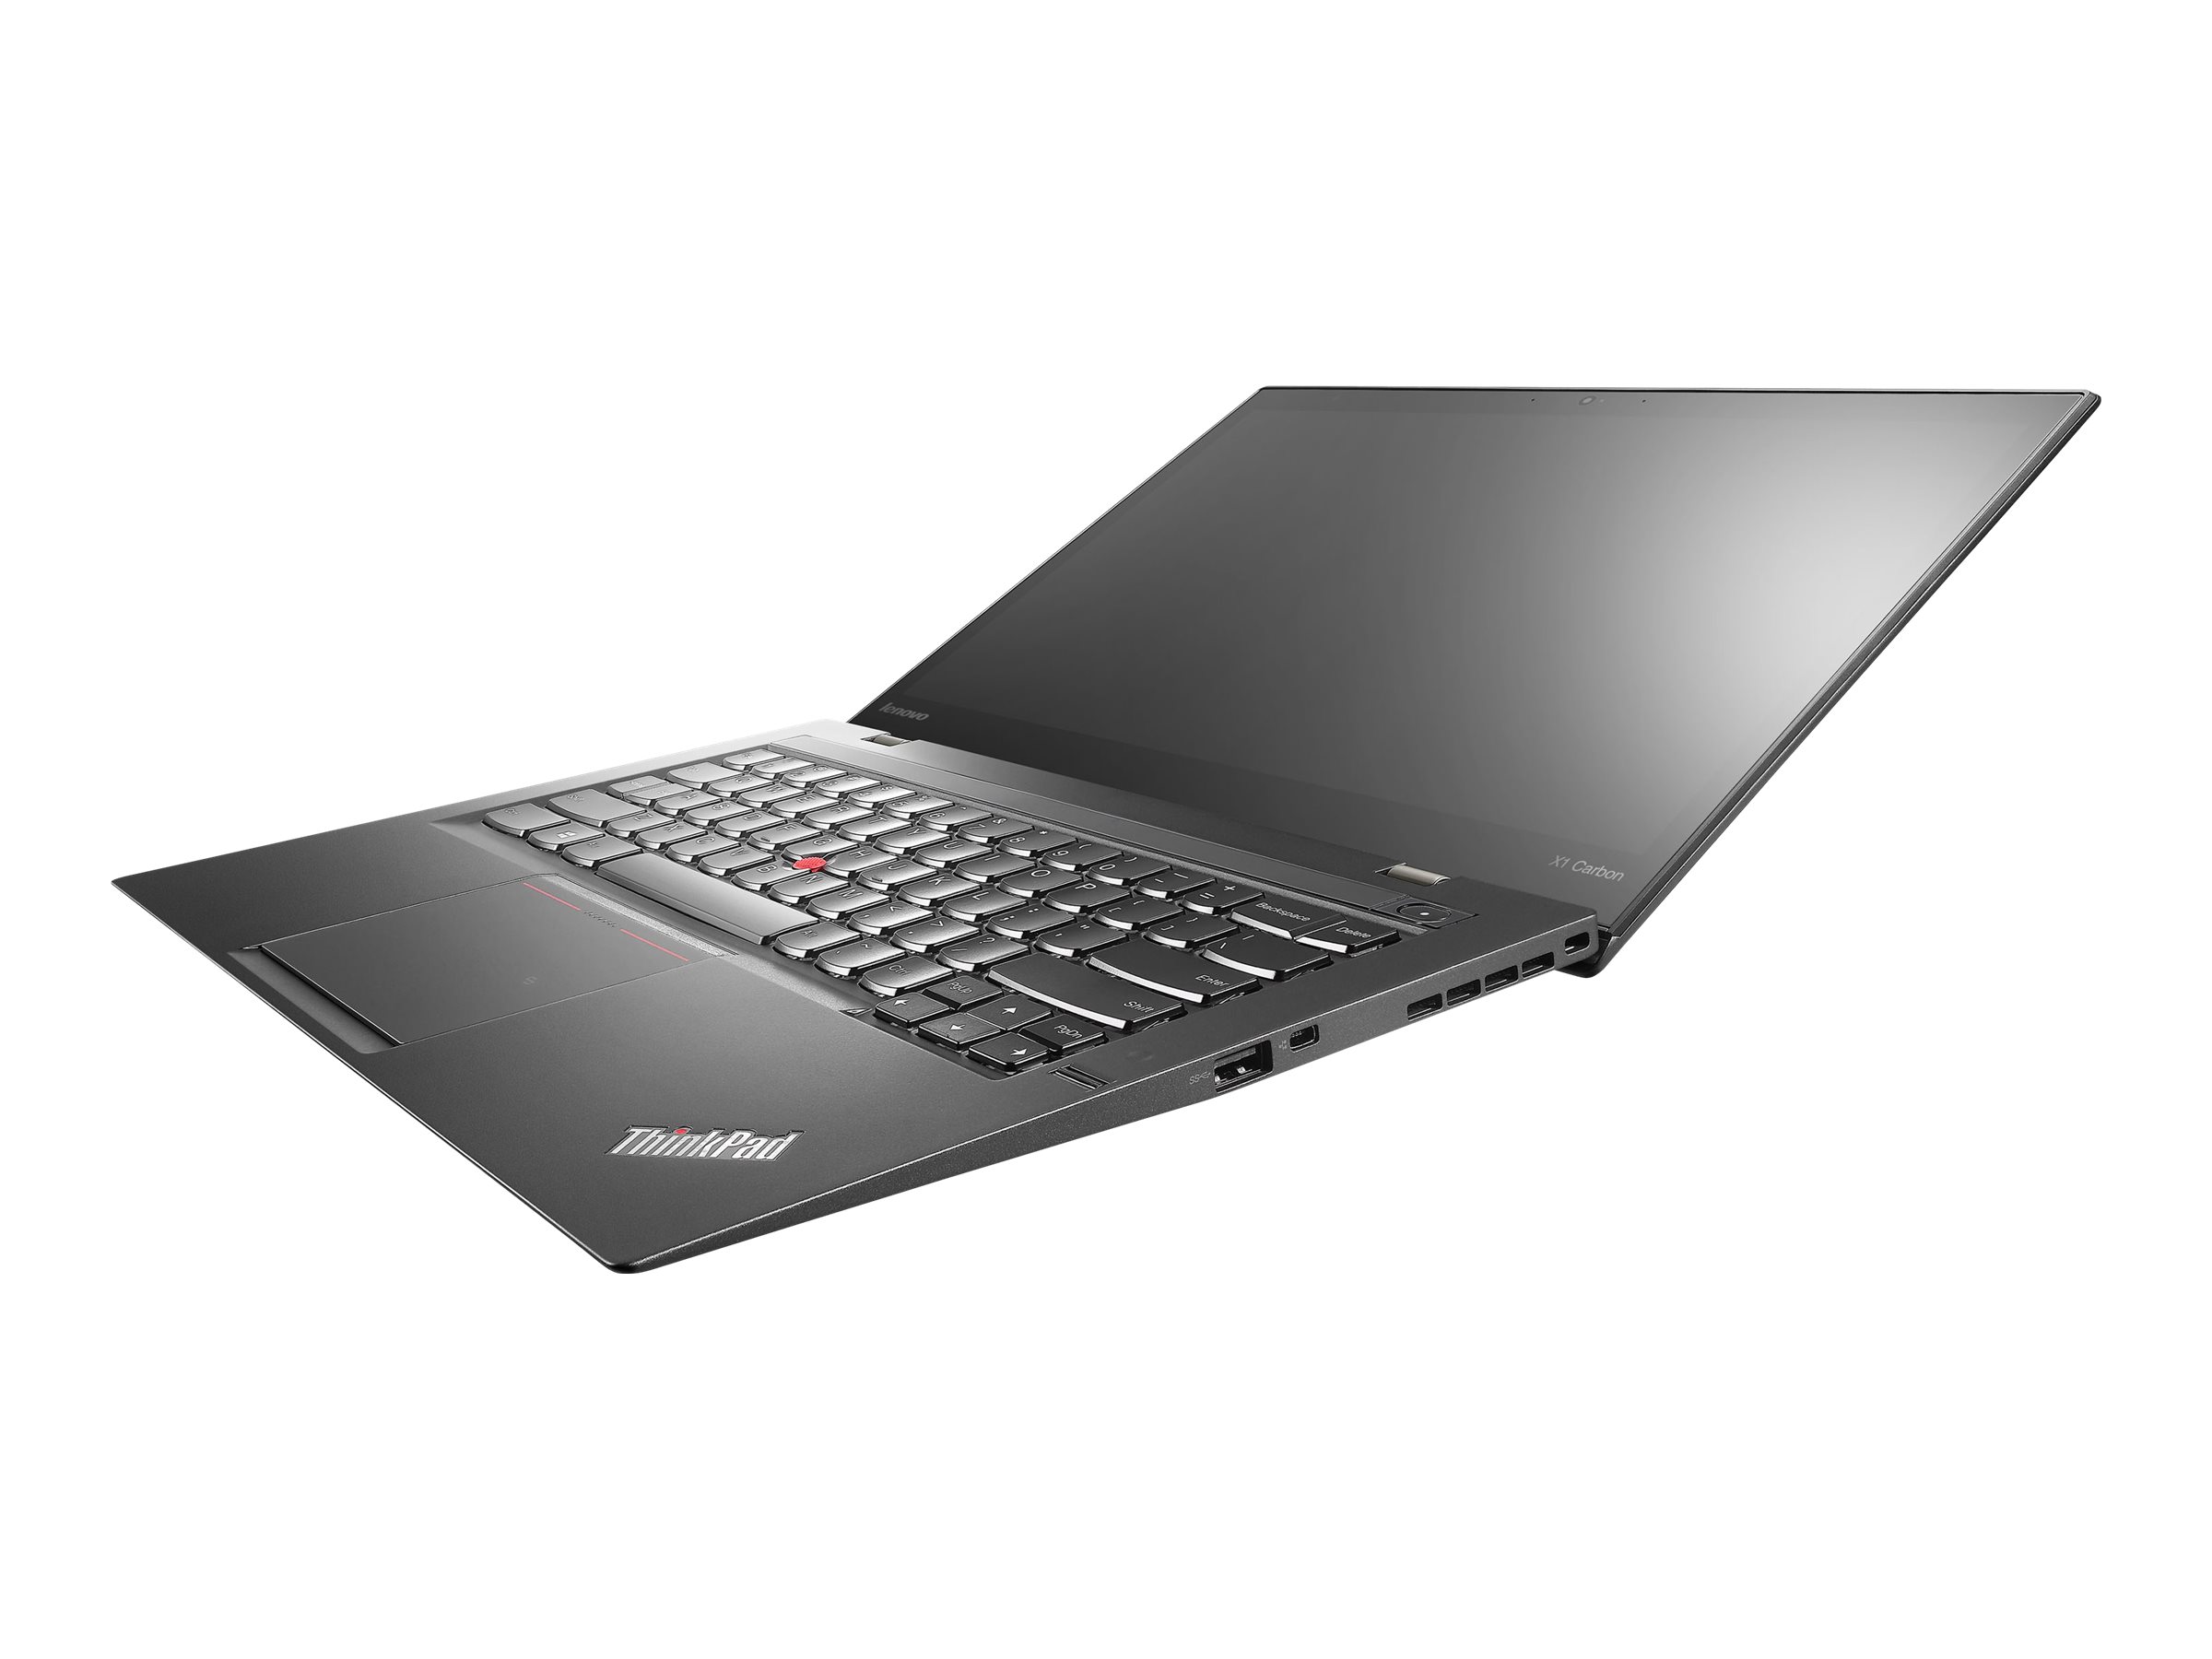 Lenovo ThinkPad X1 Carbon (3rd Gen) 20BT | www.shi.com